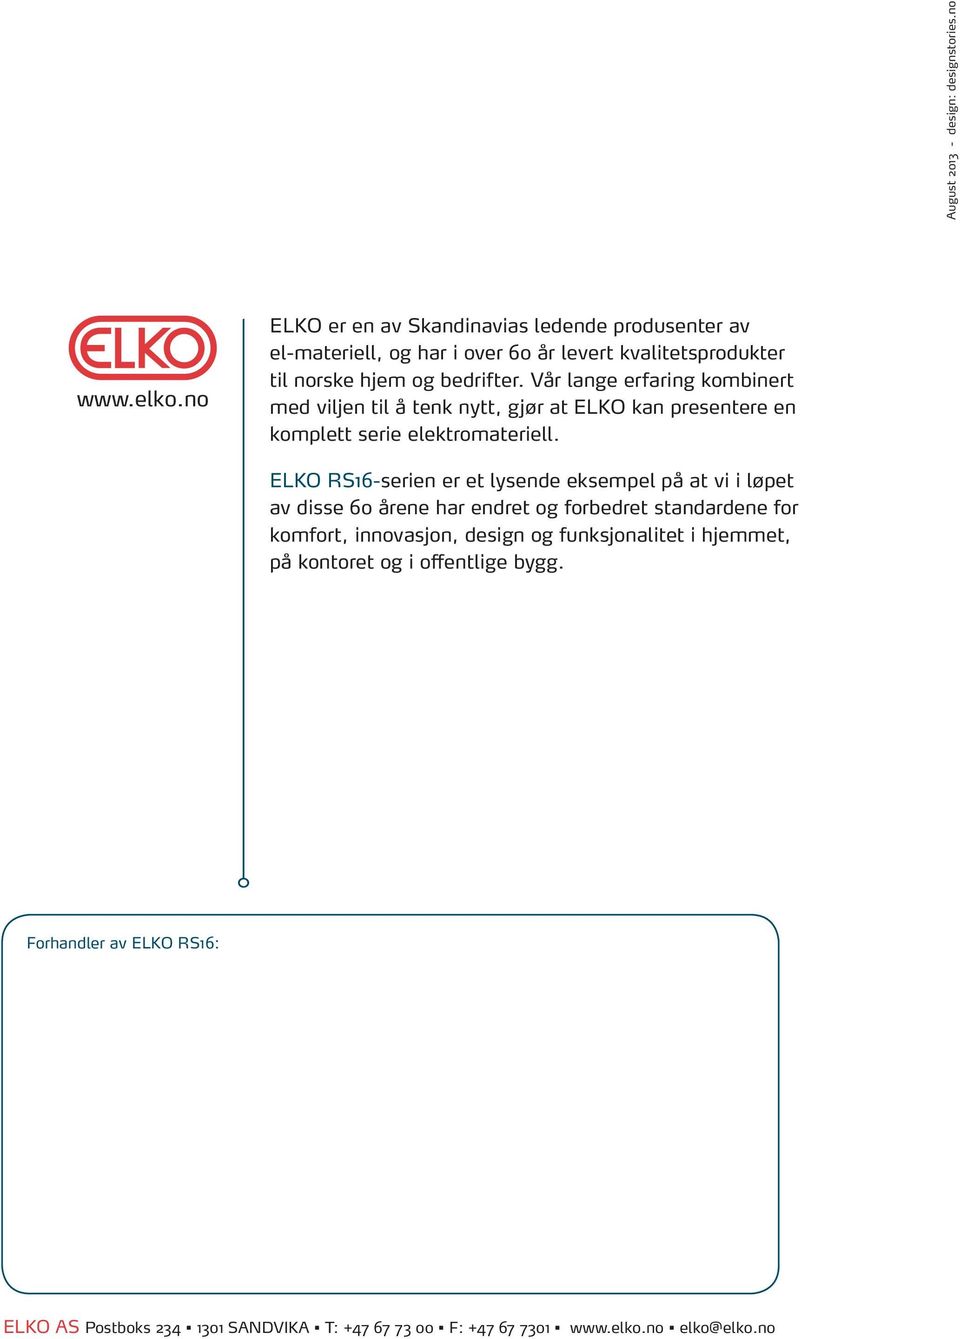 Vår lange erfaring kombinert med viljen til å tenk nytt, gjør at ELKO kan presentere en komplett serie elektromateriell.